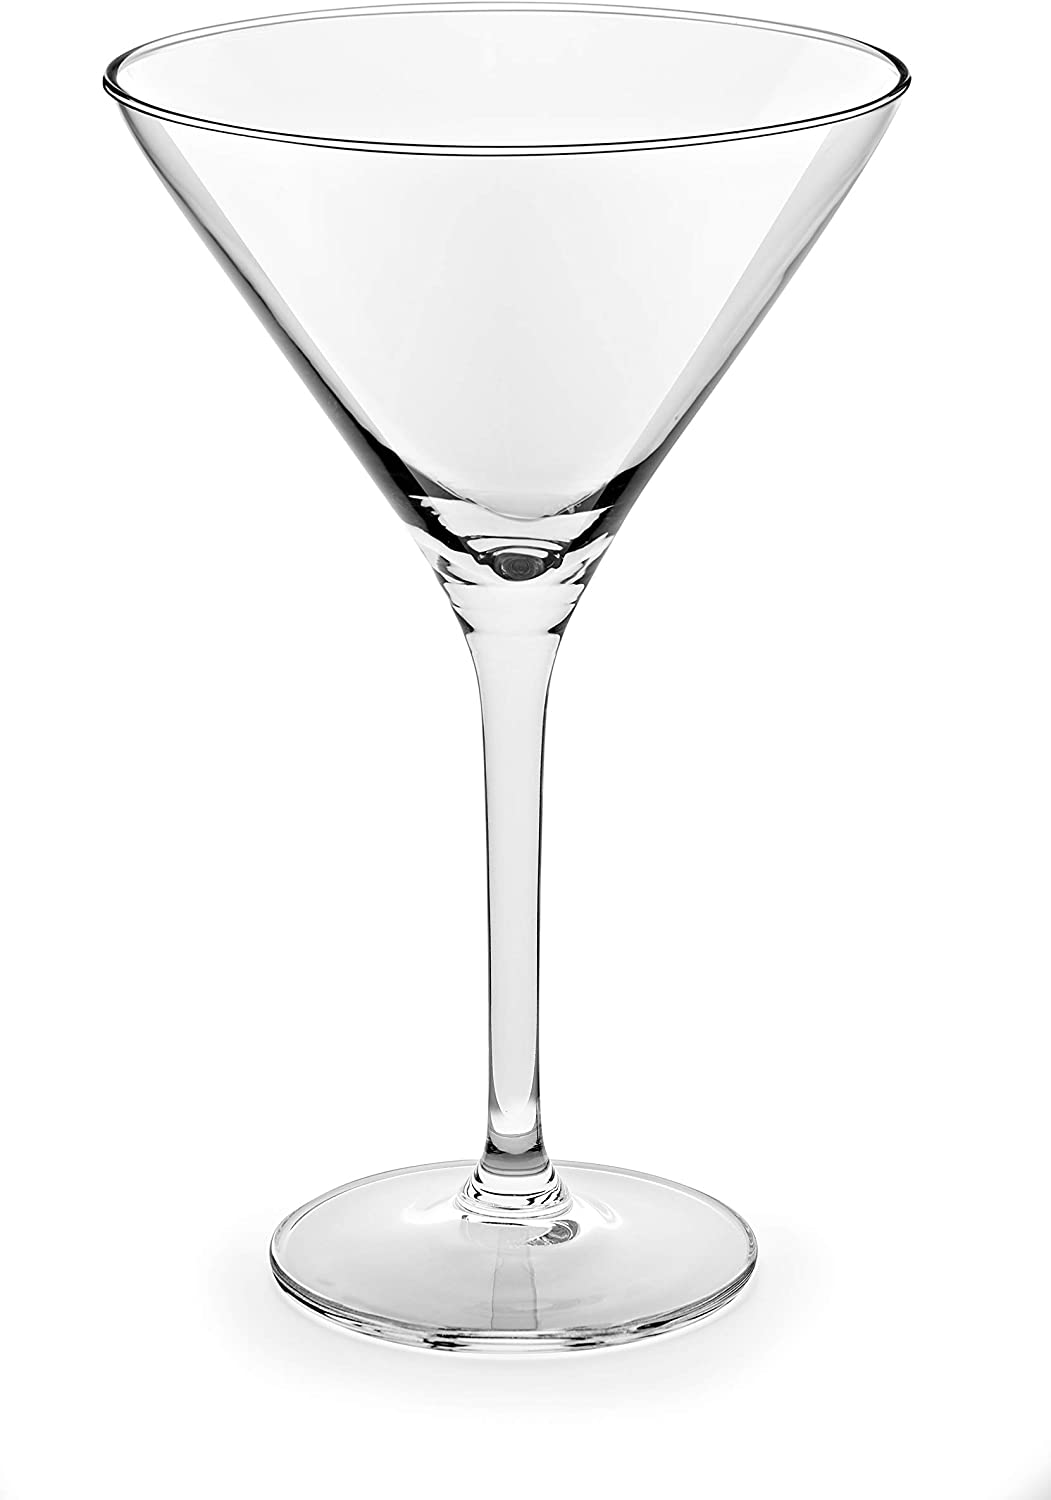 Garn. čaša za martini Cocktails 250ml 4/1 Royal Leerdam